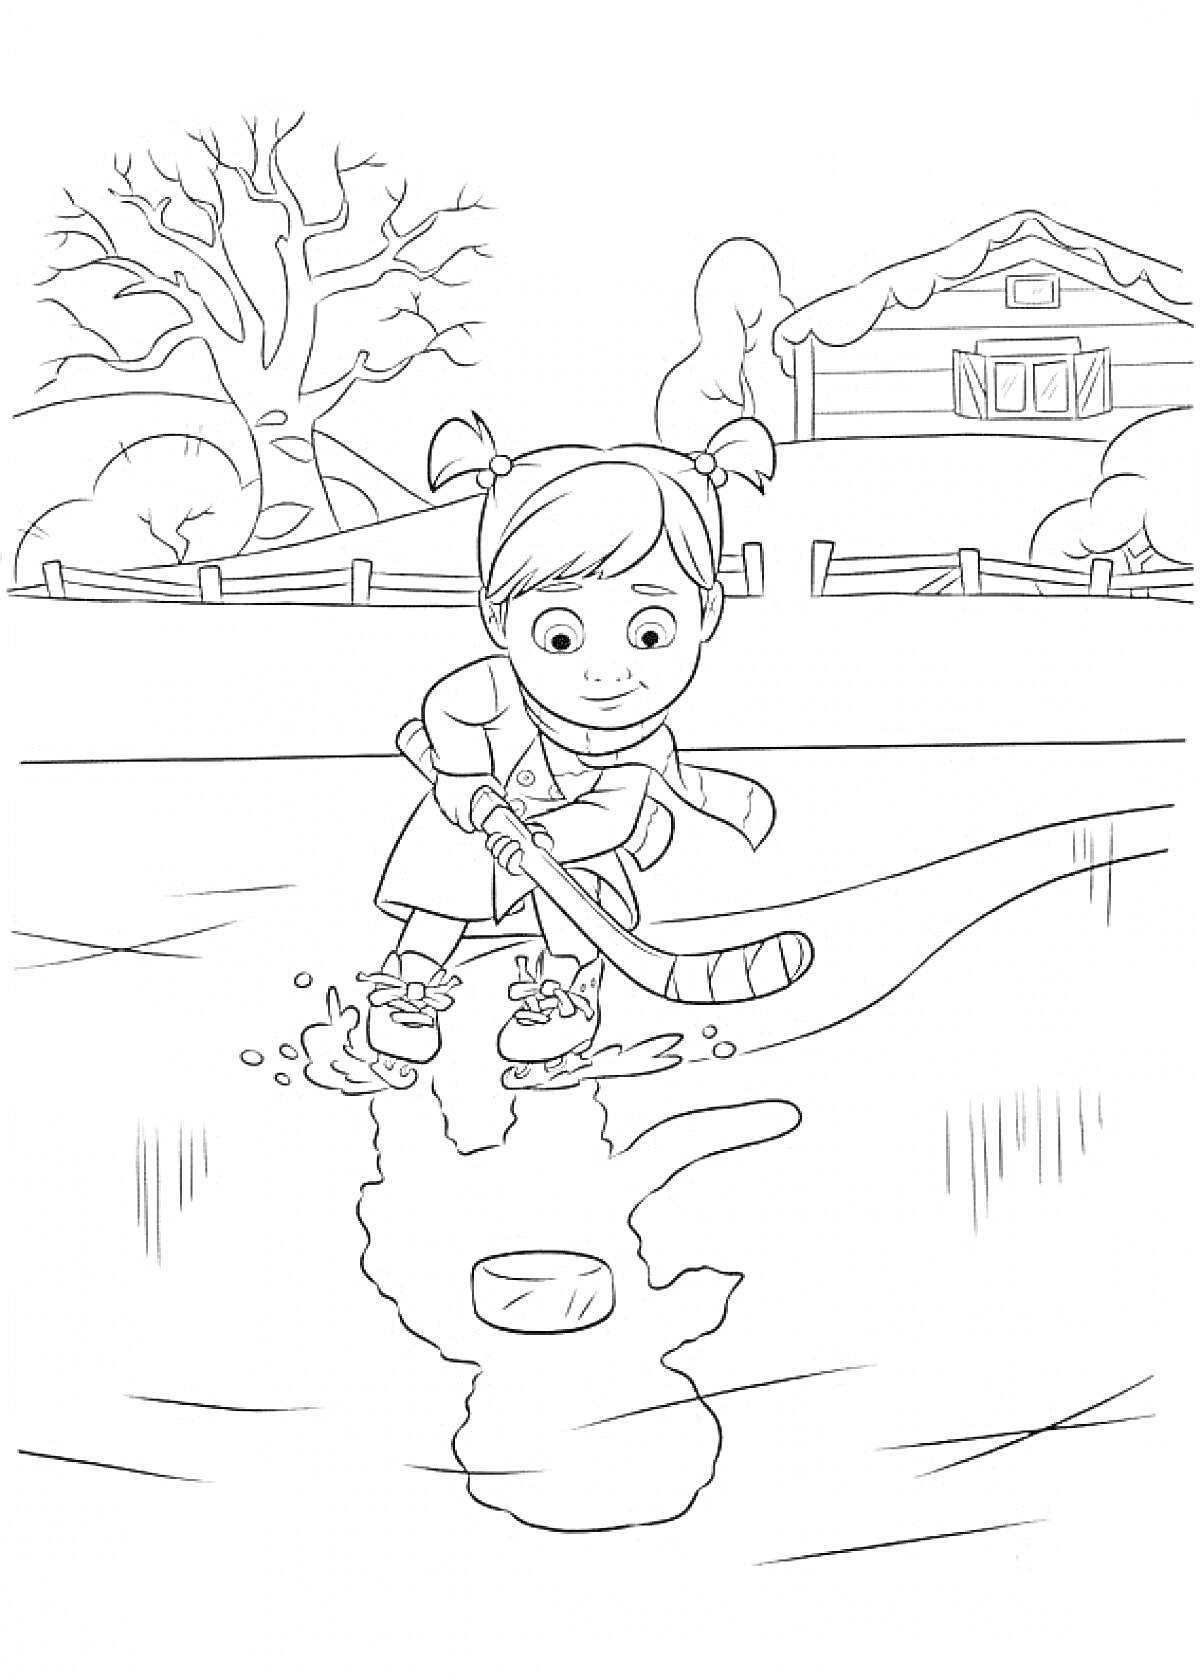 Девочка играет в хоккей на уличной ледовой площадке возле дома